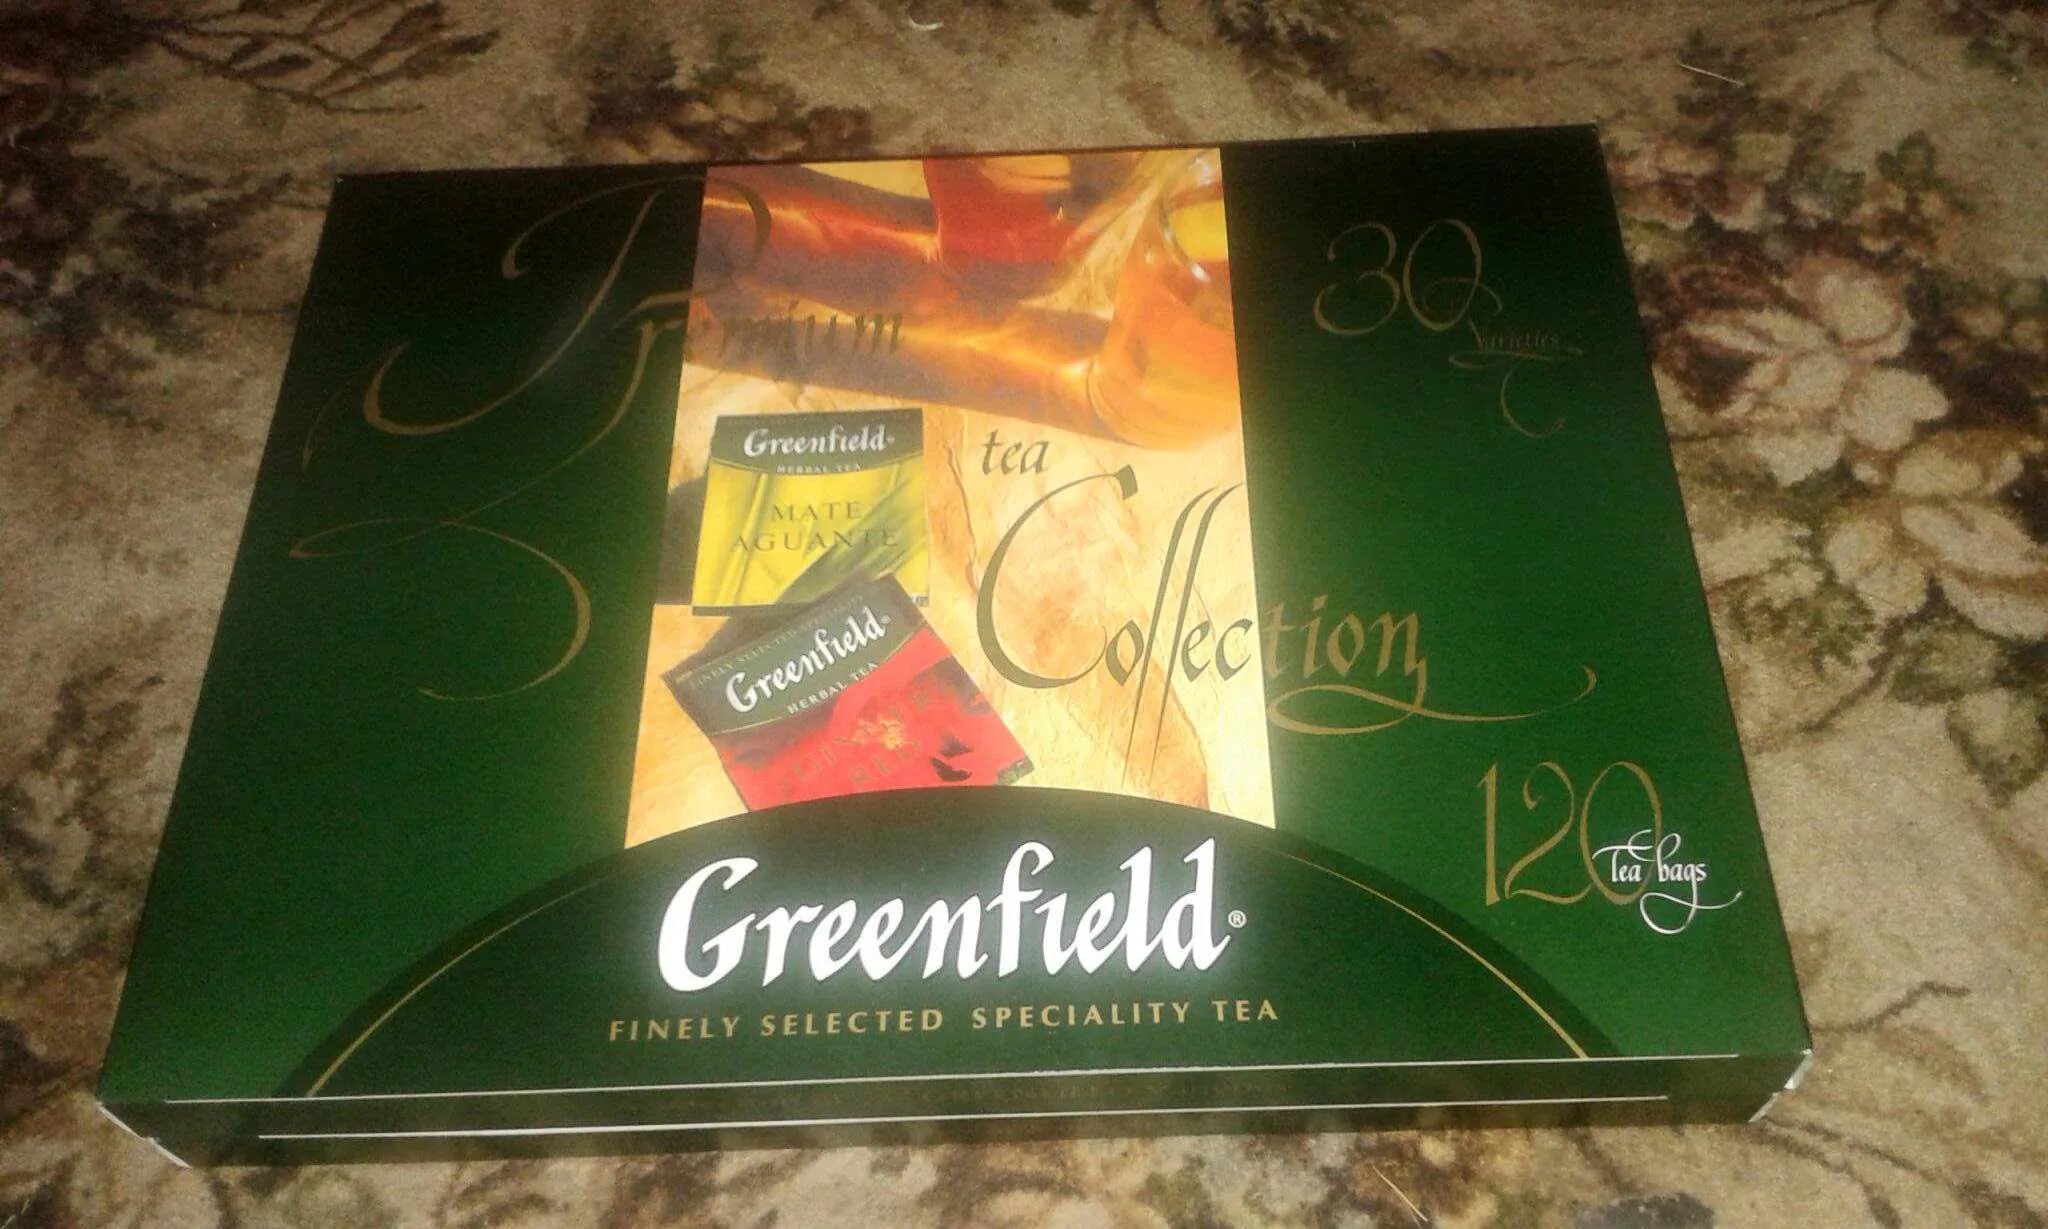 Набор чая Гринфилд 120 пакетиков. Гринфилд чай подарочный набор 120 пакетиков. Коробка чая Гринфилд 120 пакетиков. Набор чая Greenfield коллекция 120 пак.. Чай подарочный гринфилд 120 пакетиков